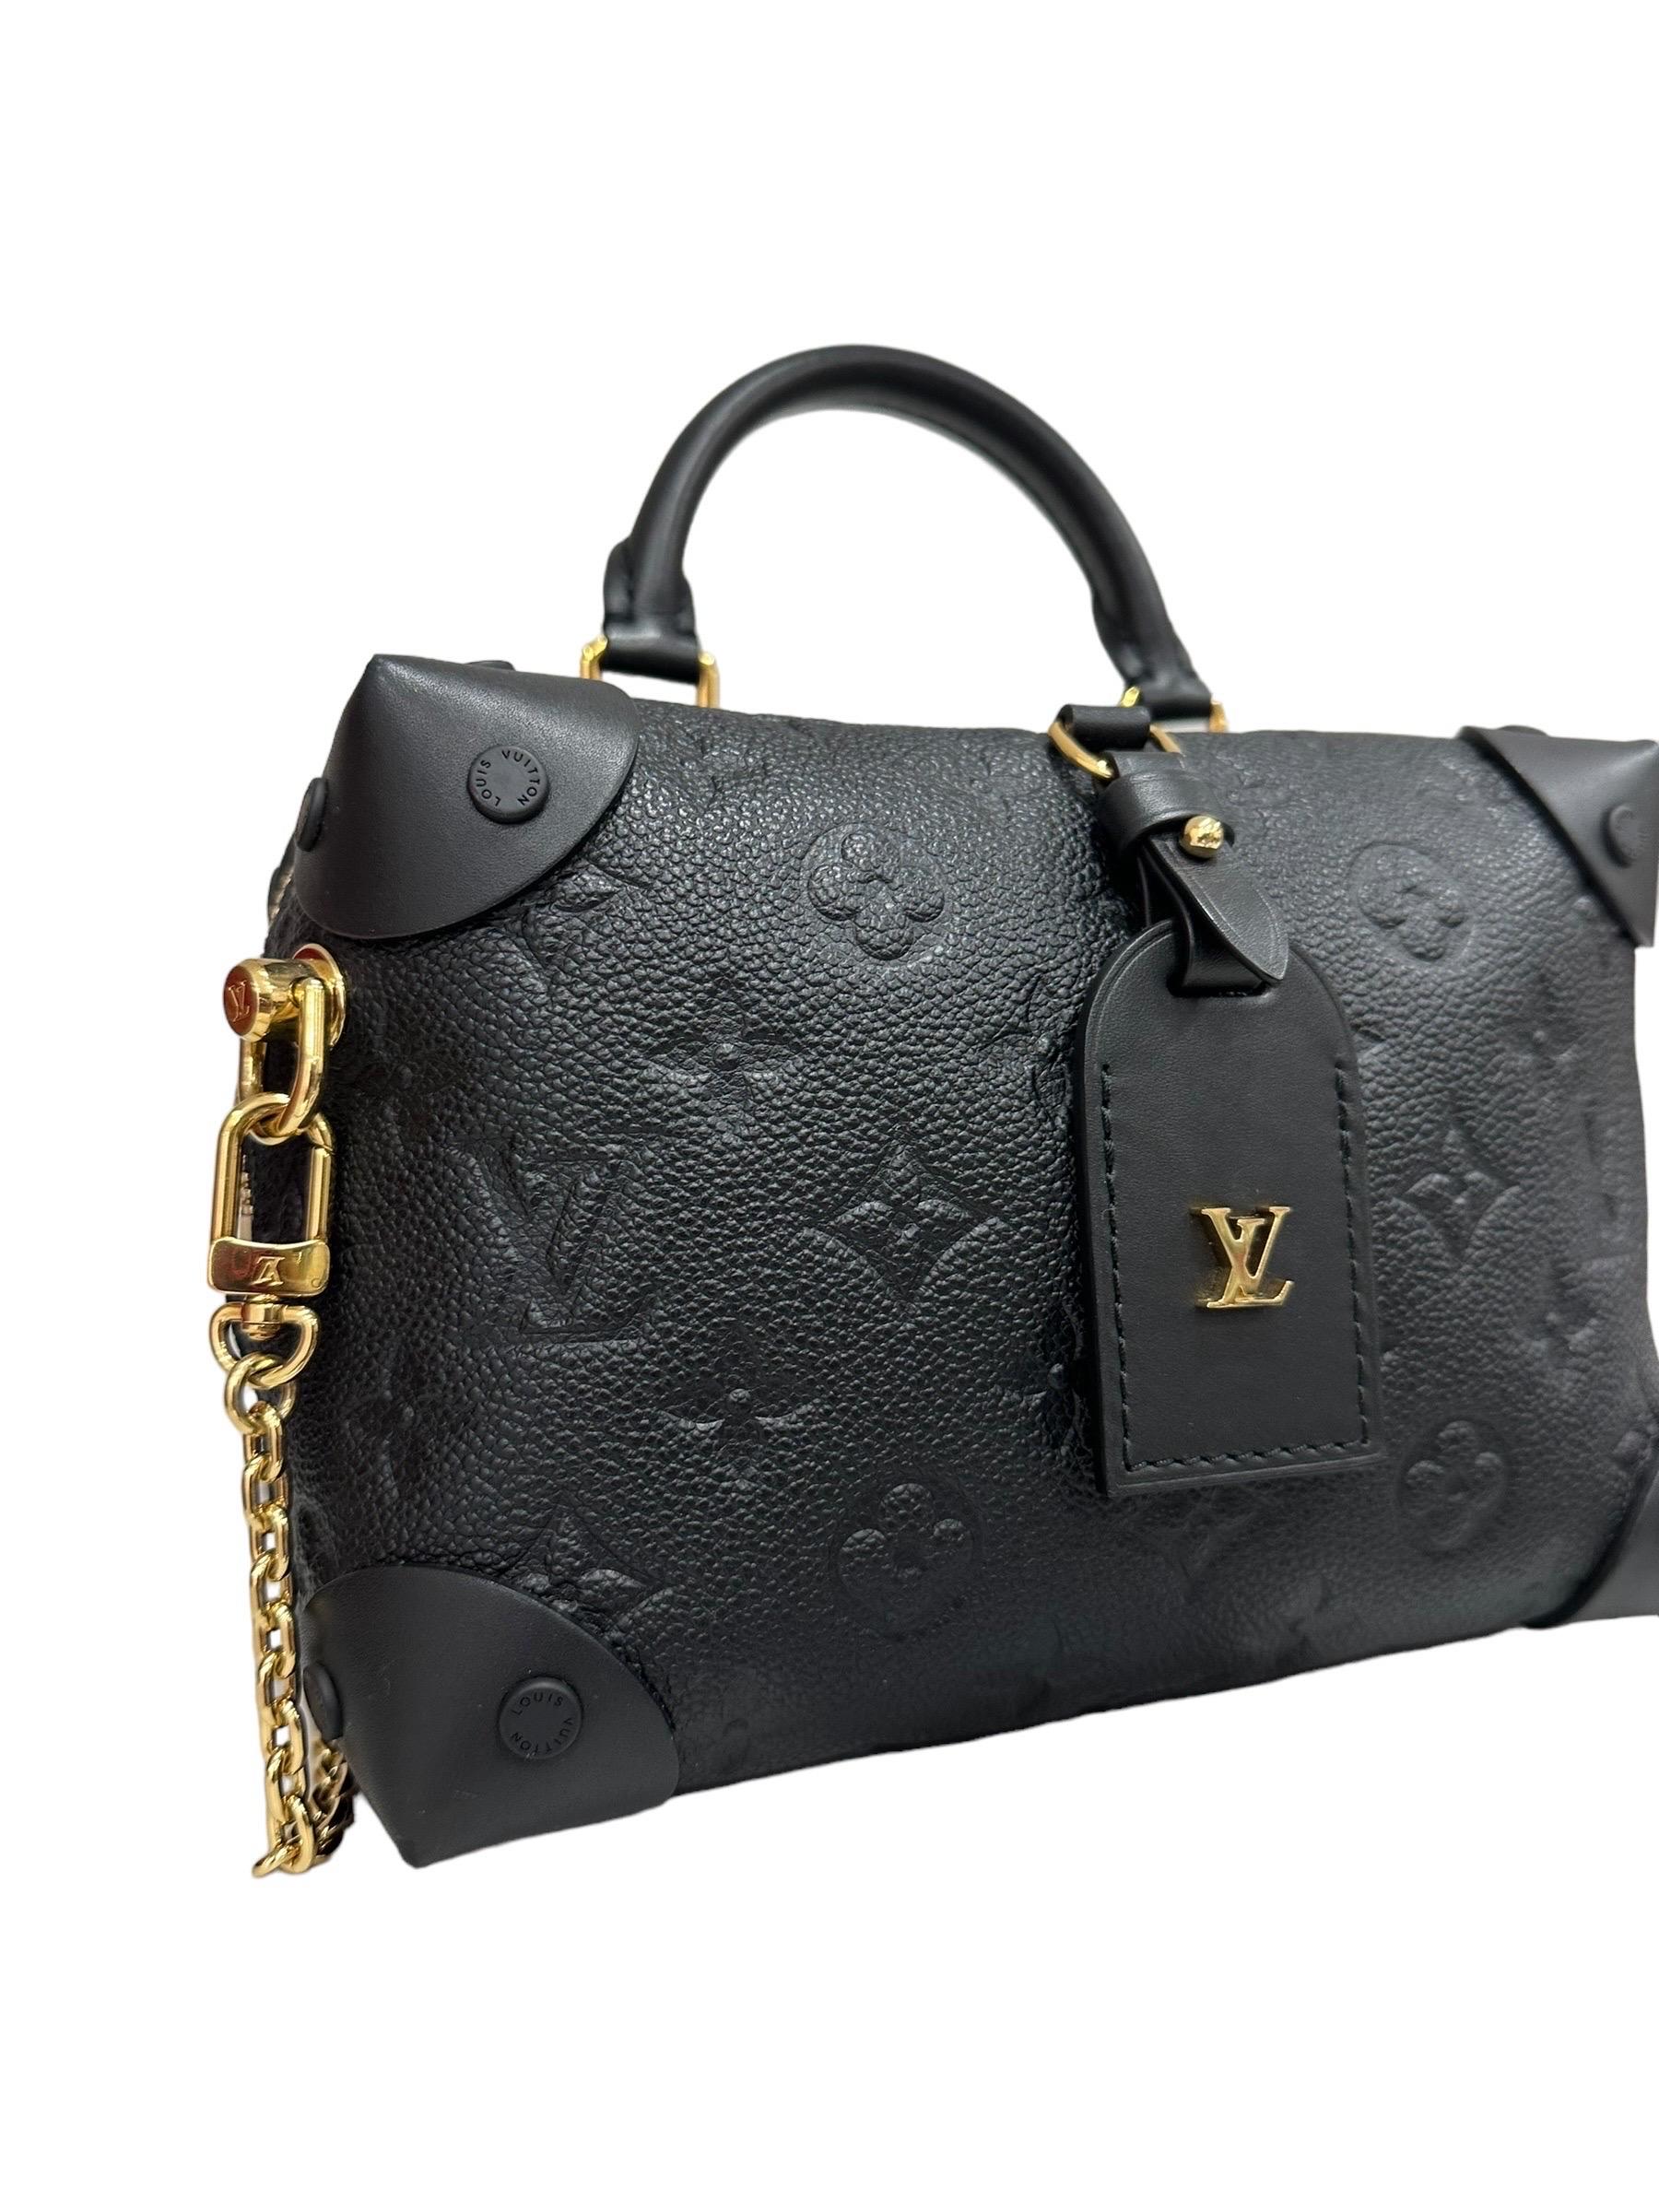 Borsa firmata Louis Vuitton, modello Petite Malle Souple, misura PM, realizzat ain pelle emprainte nera con hardware dorati. Dotat di una chisura con zip superiore, internamente rivestita in alcantara nero, capiente per l’essenziale. Munita di un